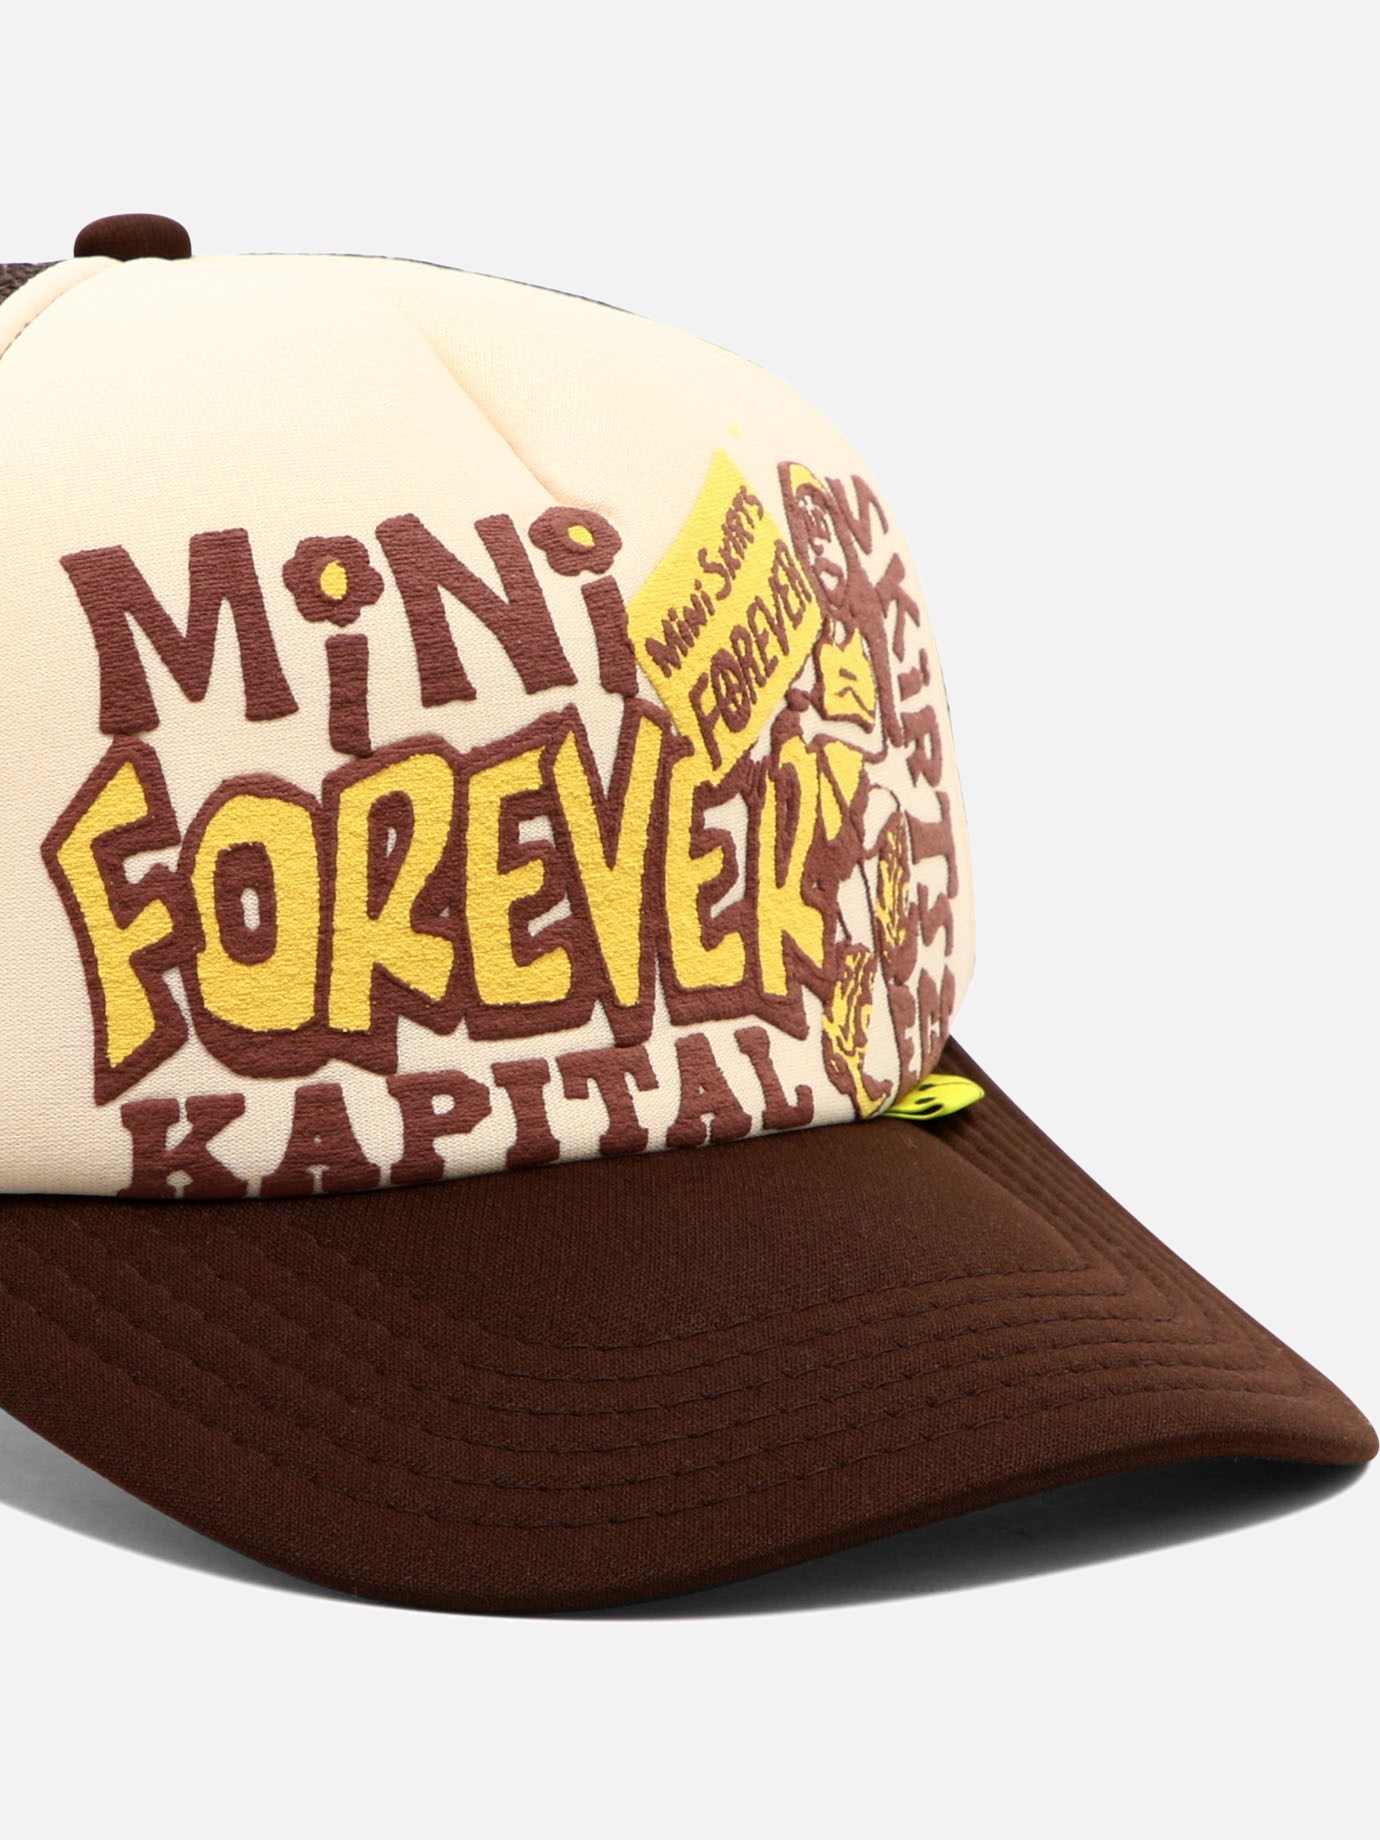  Mini Skirts Forever  trucker hat by Kapital